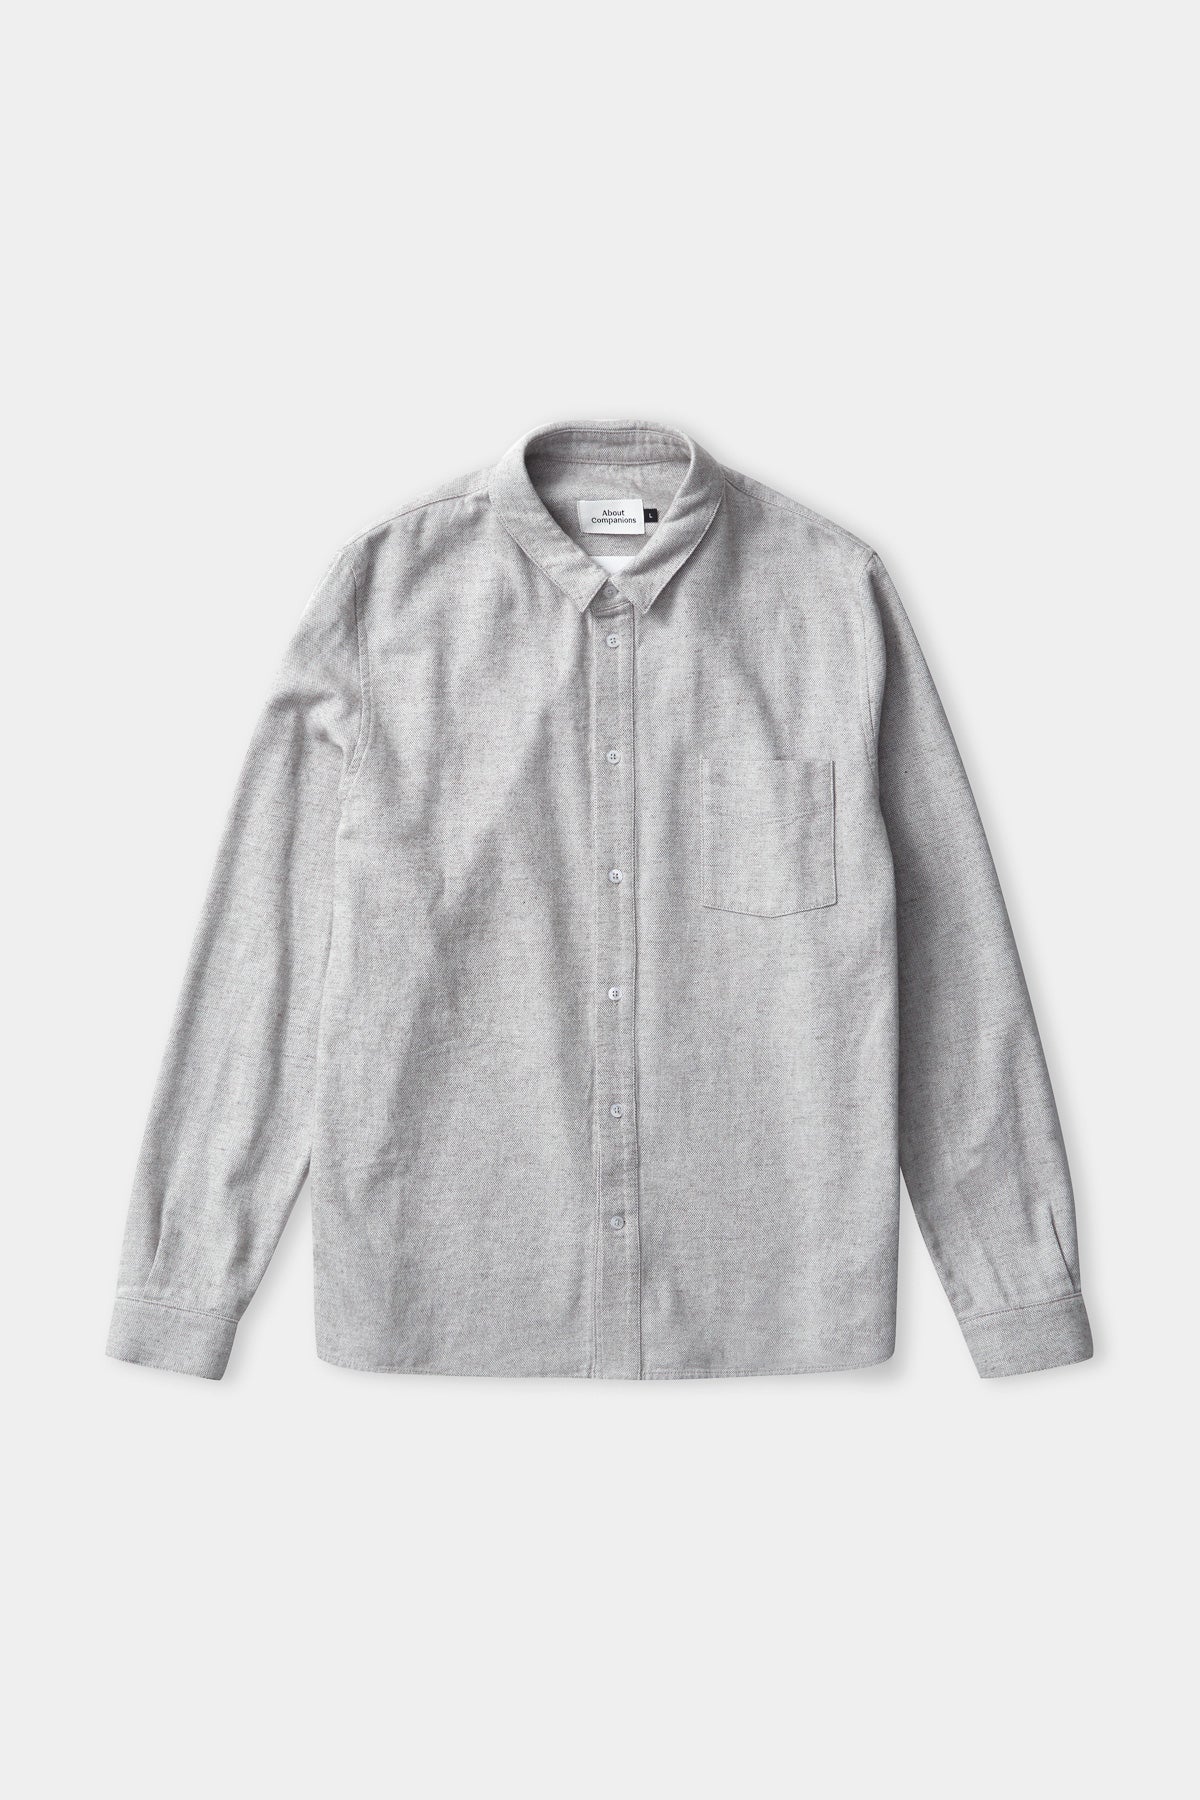 SIMON shirt eco ash flannel